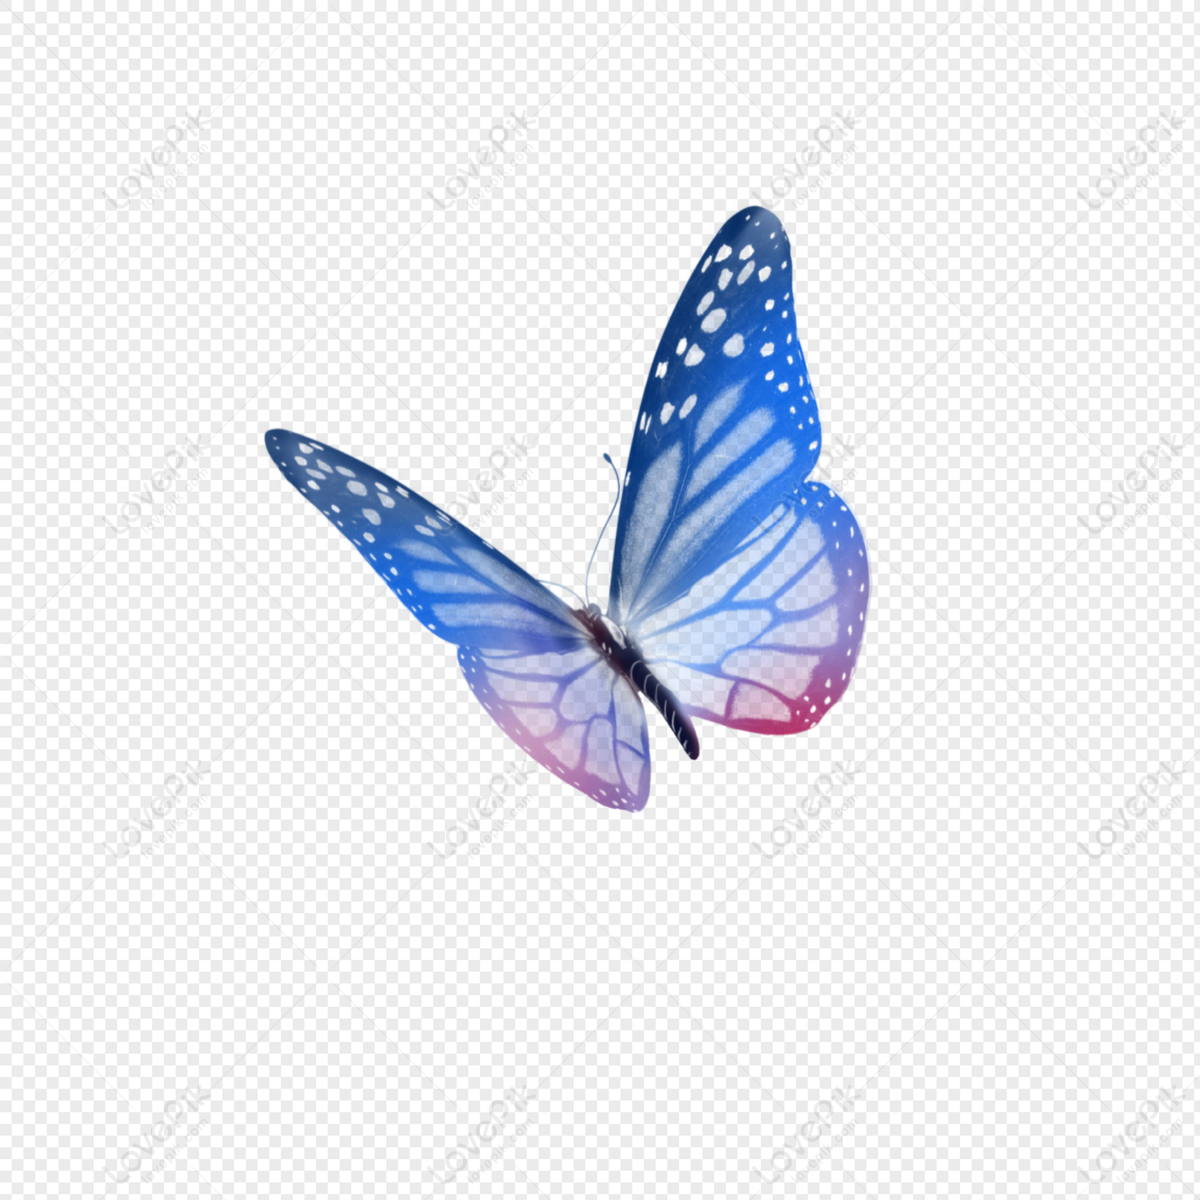 Hình ảnh bướm xanh PNG với nền trong suốt: Cùng đắm chìm trong vẻ đẹp của một loài bướm xanh tuyệt đẹp với những lá và hoa nổi bật trên nền hình trong suốt, tạo nên một ảnh chụp tuyệt đẹp mà bạn muốn xem đi xem lại.